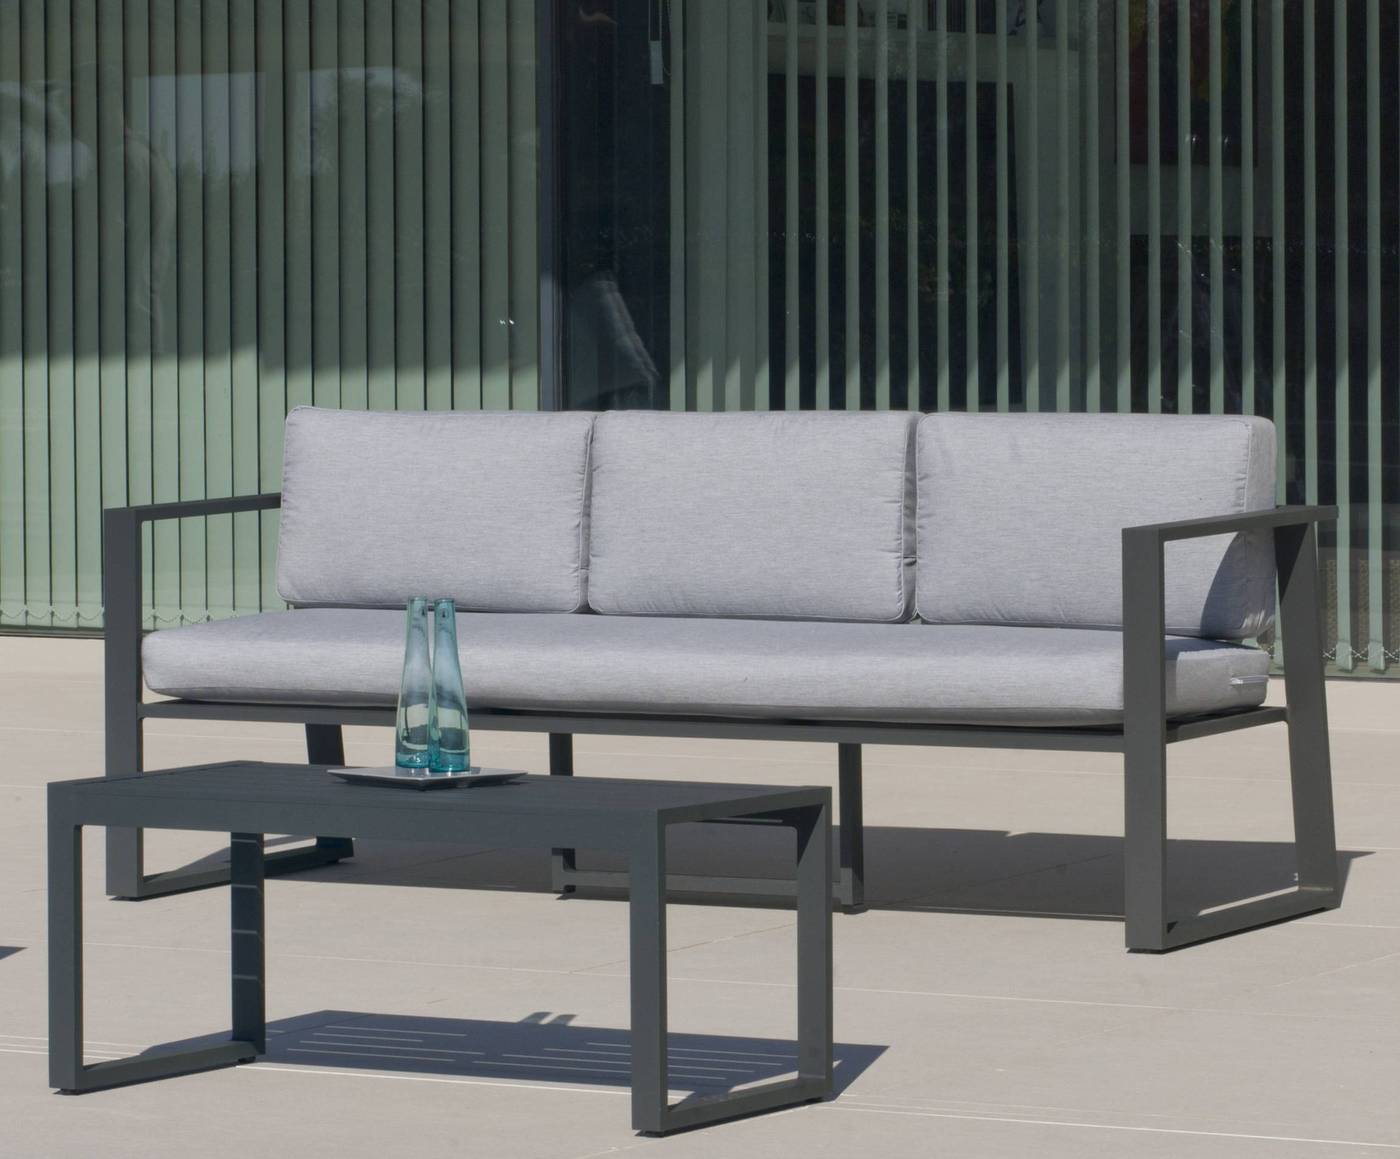 Sofá 3 plazas con cojines gran confort desenfundables. Estructura aluminio luxe color blanco, plata y antracita.